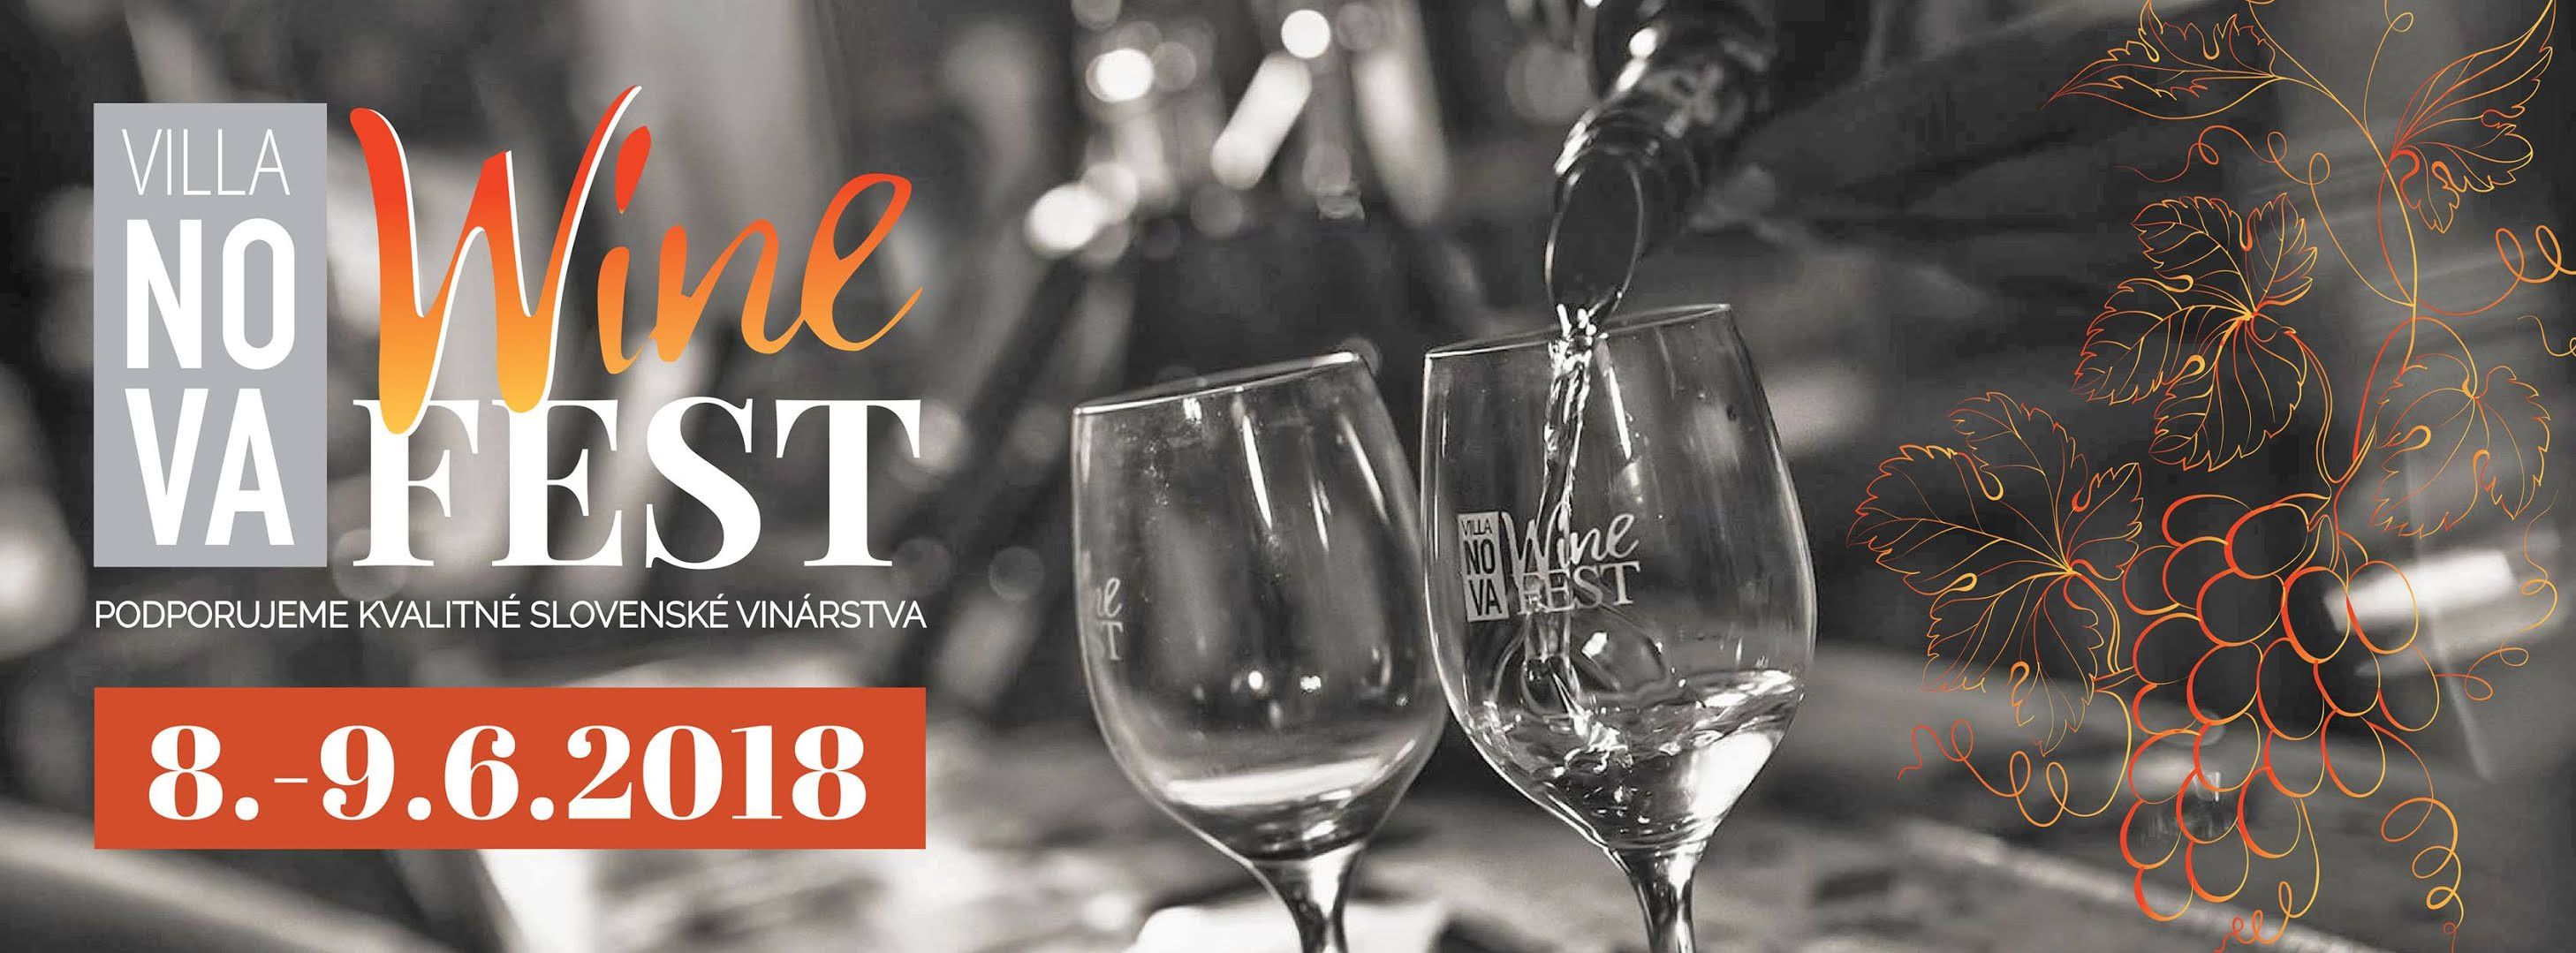 Villa Nova Wine fest (8. - 9.6.2018)